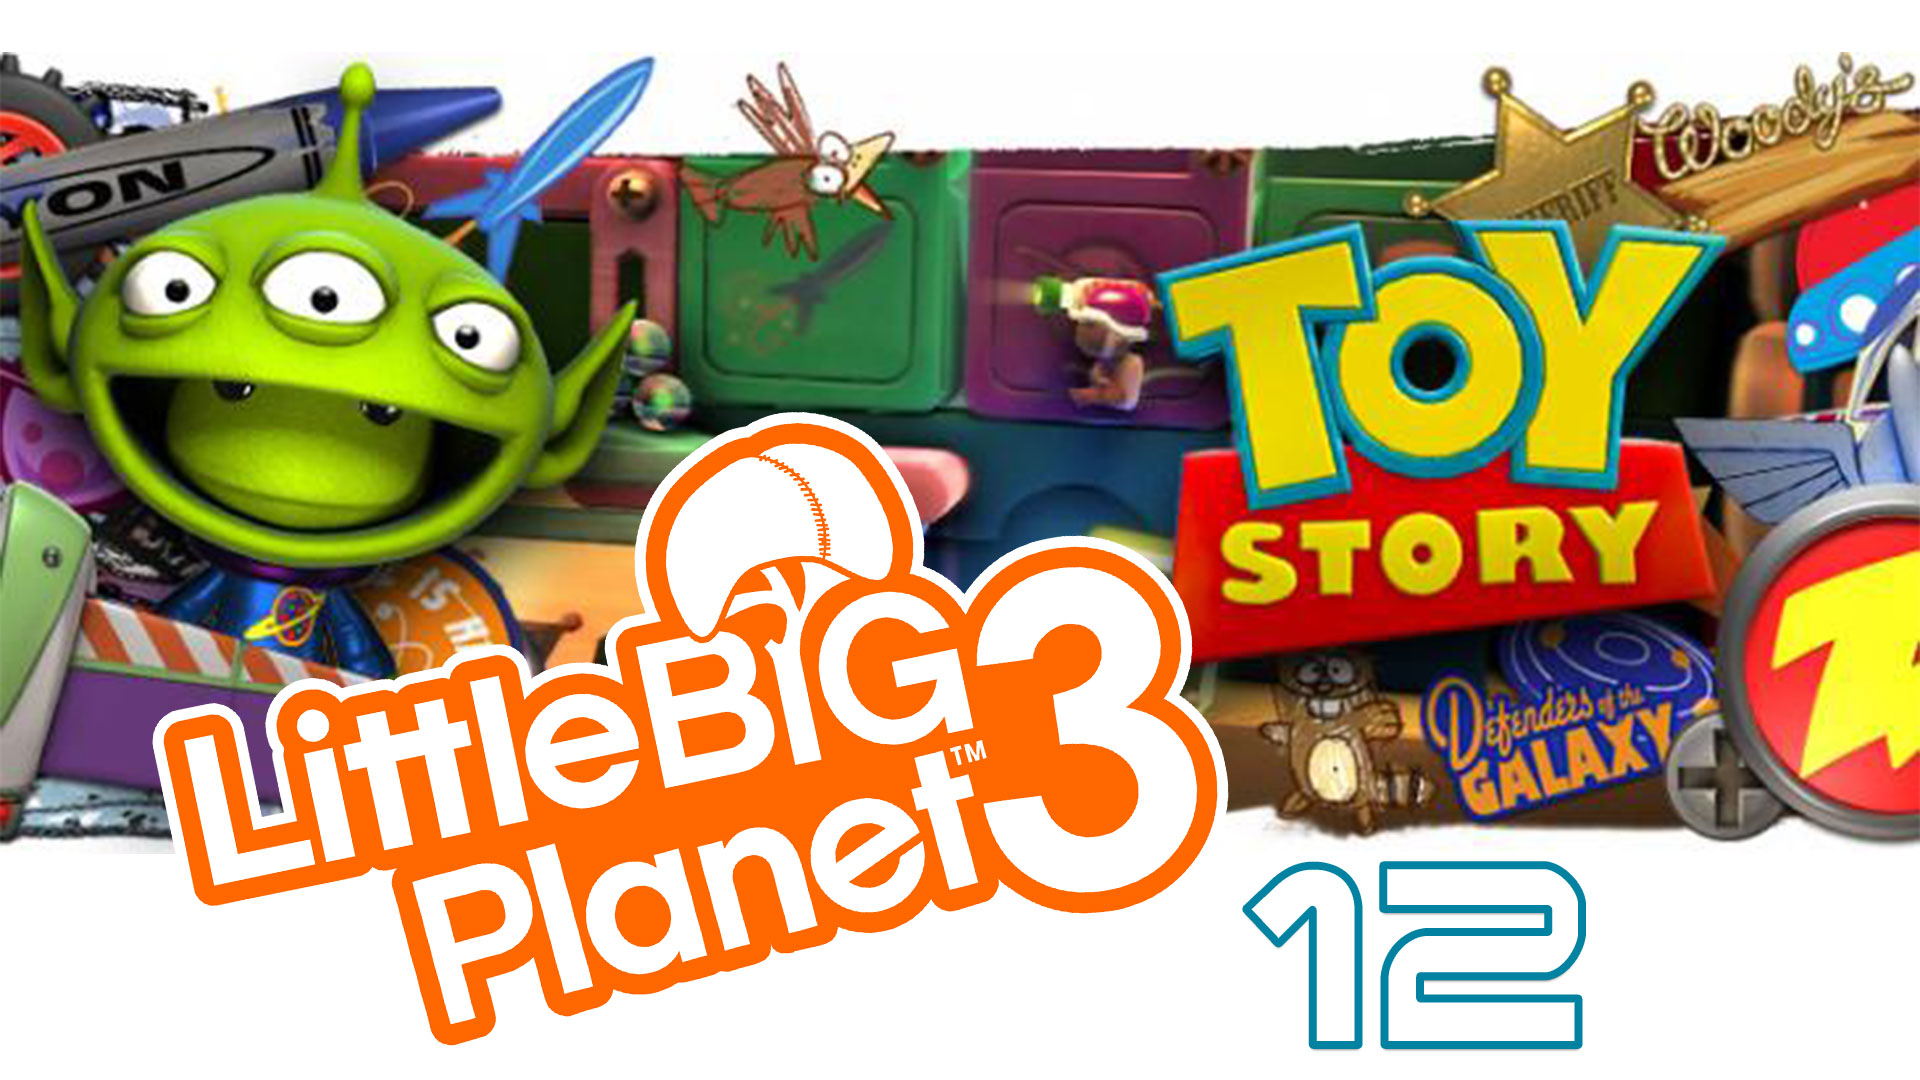 LittleBigPlanet 3 - Сезон 2 - Кооператив - История игрушек ч. 3 - Прохождение [#12] | PS4 (2016 г.)